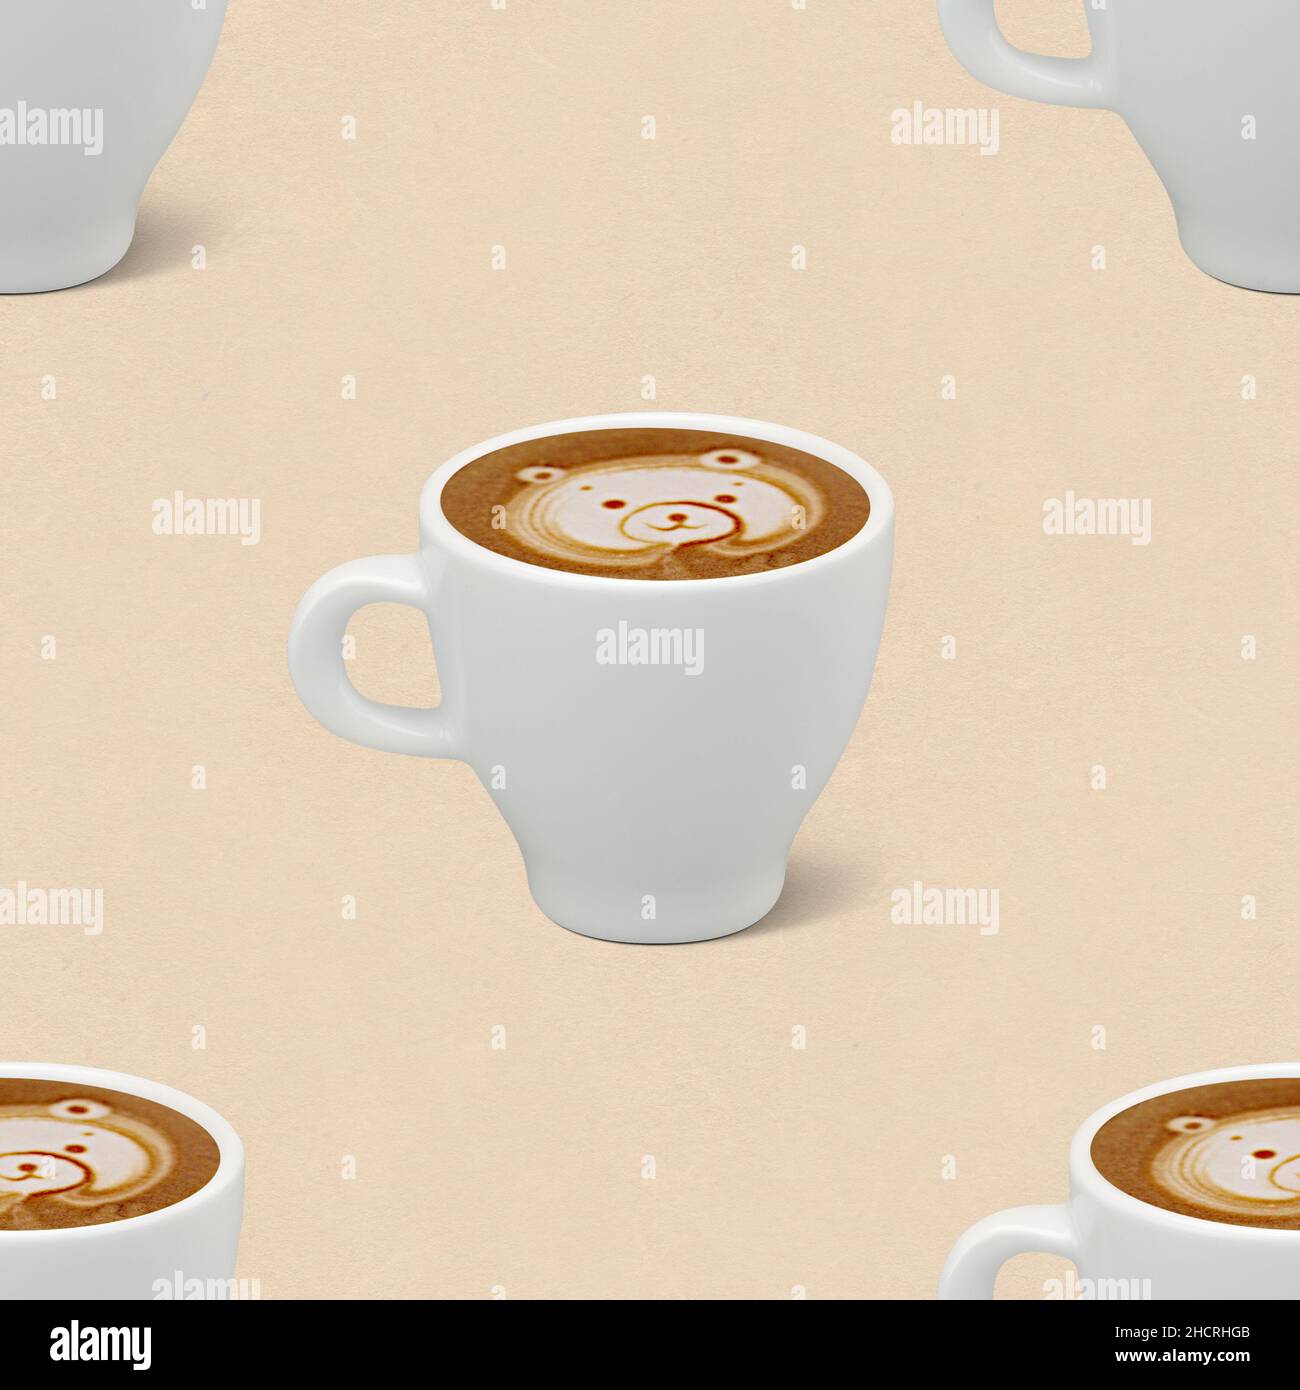 Nahtloser Hintergrund mit Cappuccino-Kaffeemotiv. Latte Art mit Bär. Am  besten für Verpackungen, Kaffeepads, Tapeten Stockfotografie - Alamy